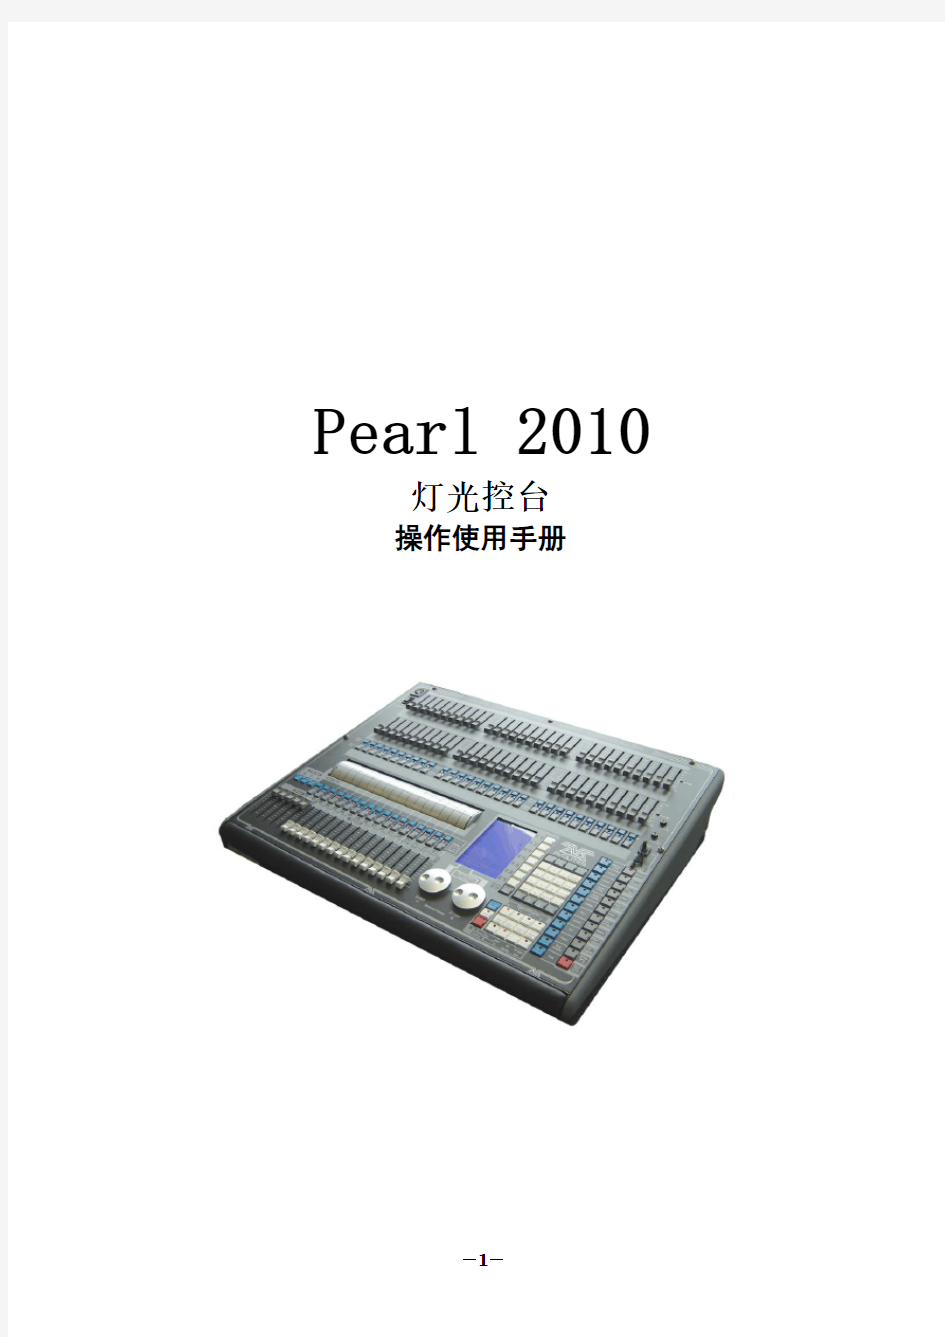 珍珠2010灯控台操作最全手册.